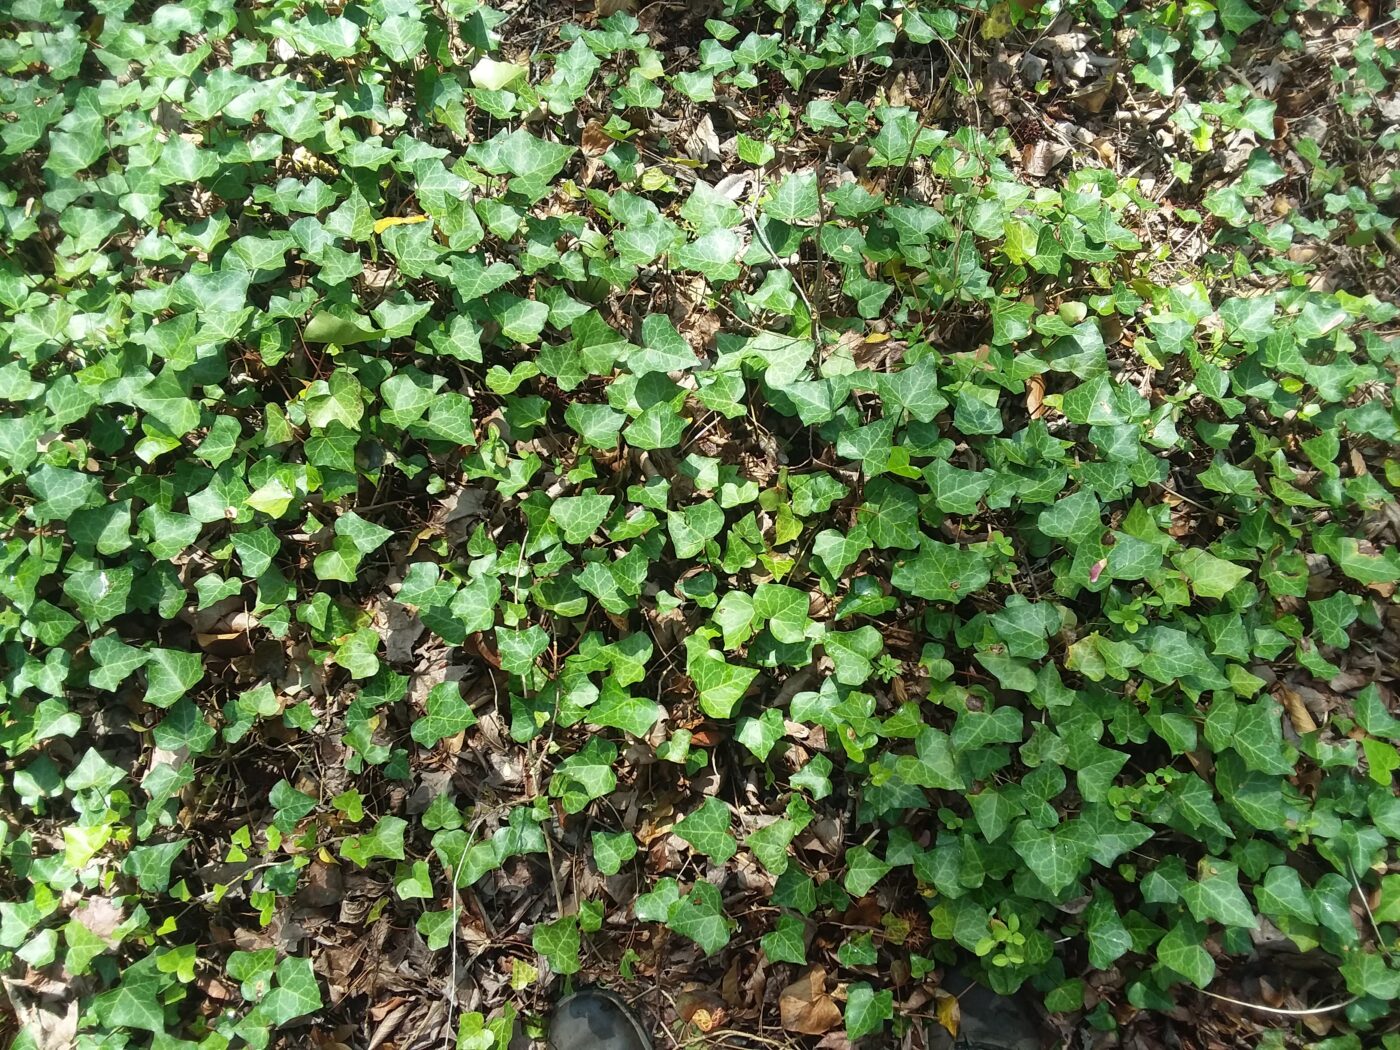 Invasive species: English Ivy